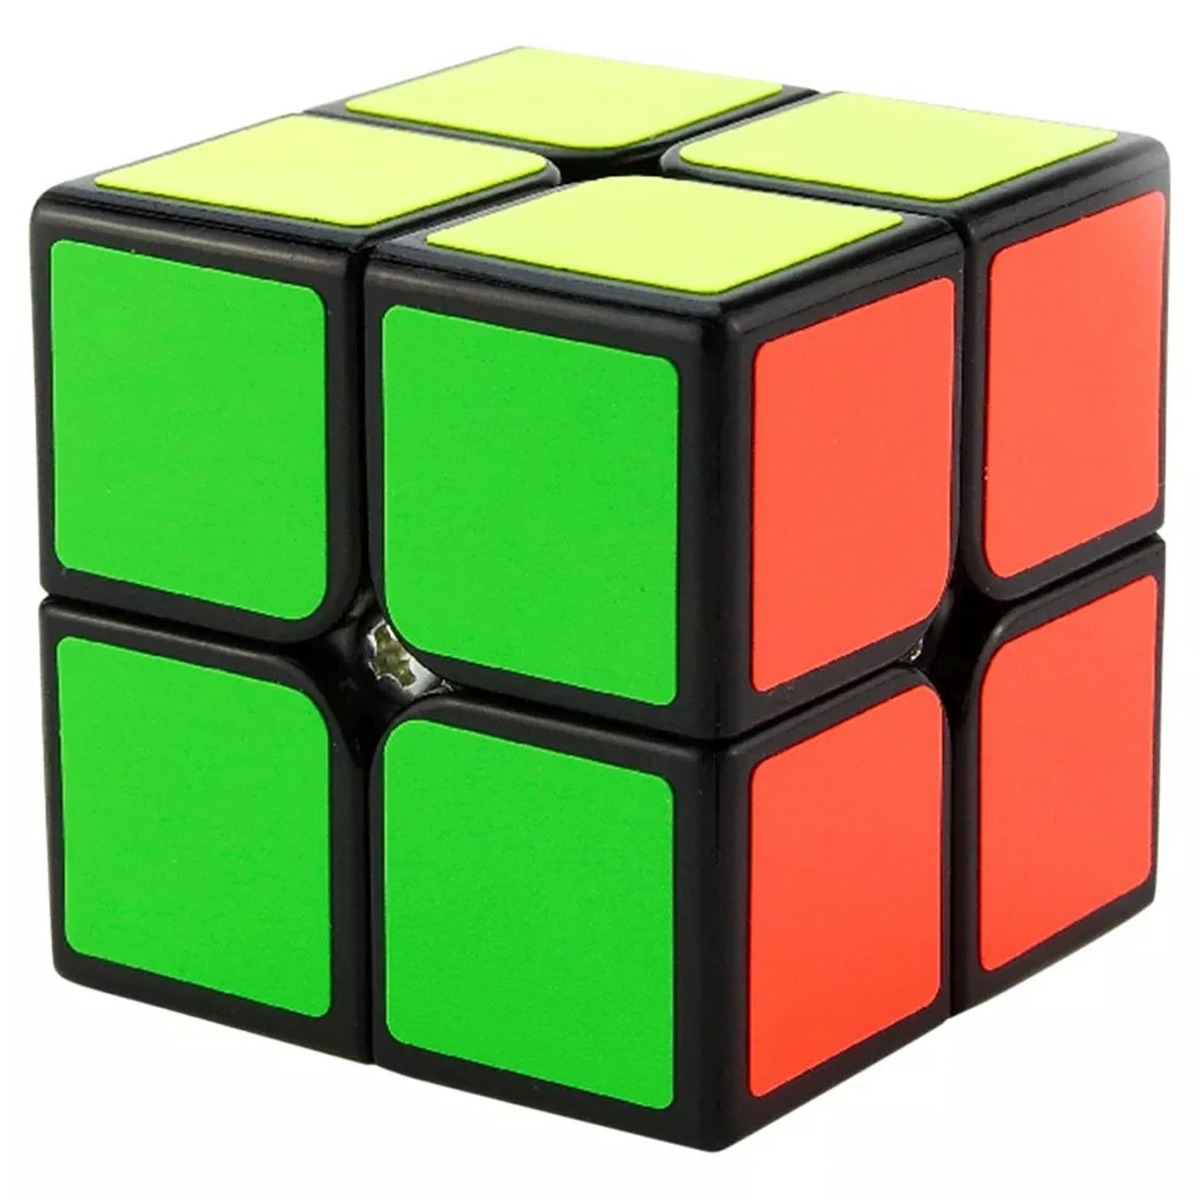 Cubo Rubik Shengshou 2x2 Aurora Base Negra J1031 4900 En Mercado Libre